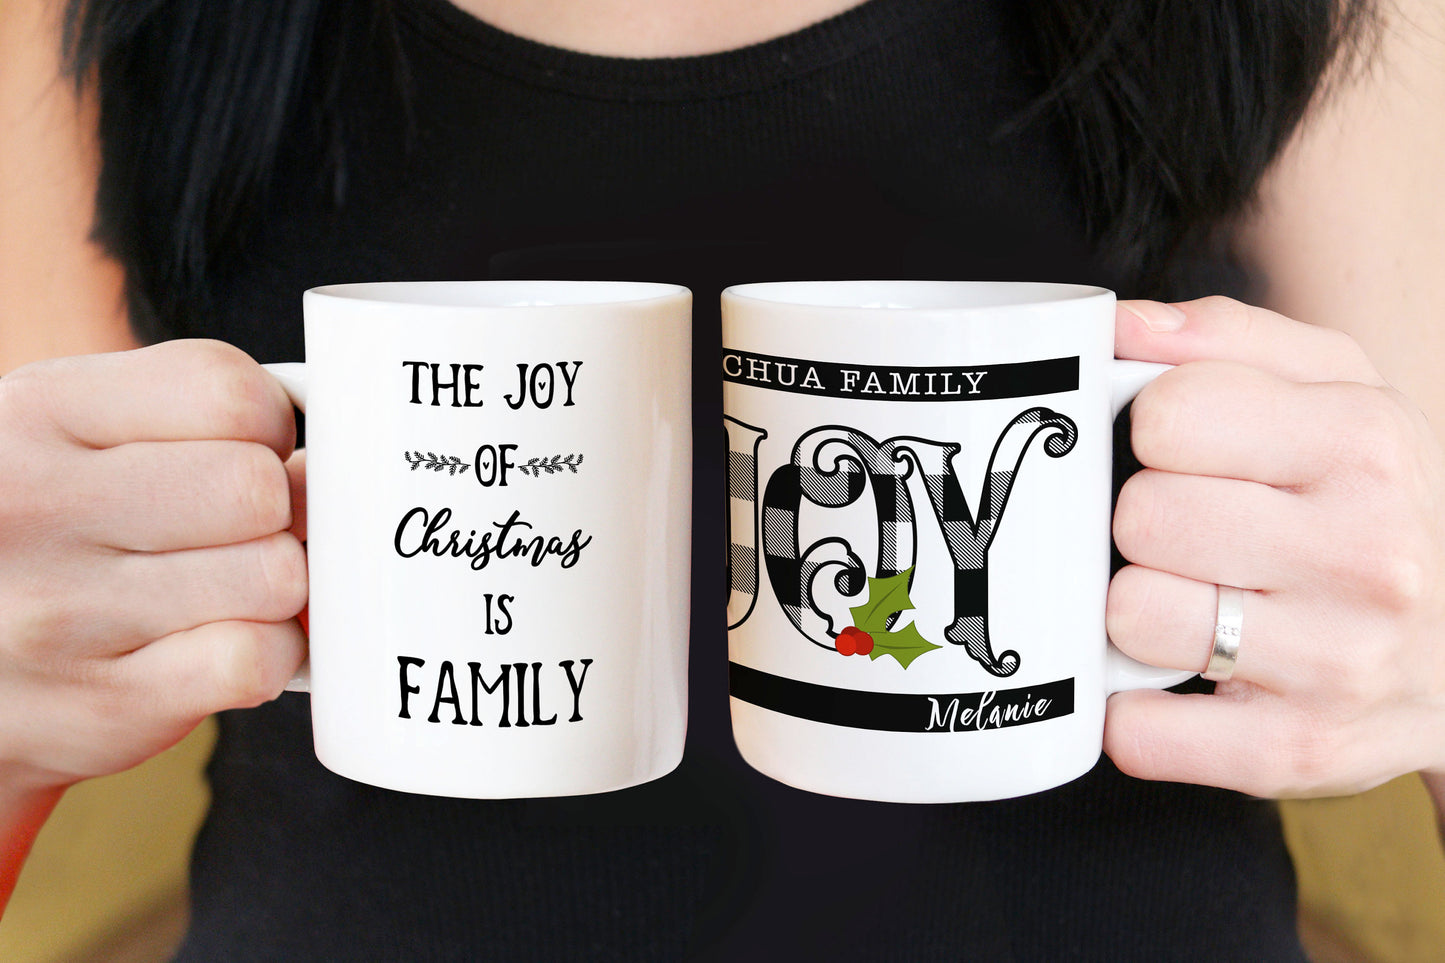 Custom Christmas Gifts Coffee Mug for Family, Holiday Mug Gift Idea, Christmas Plaid Mug